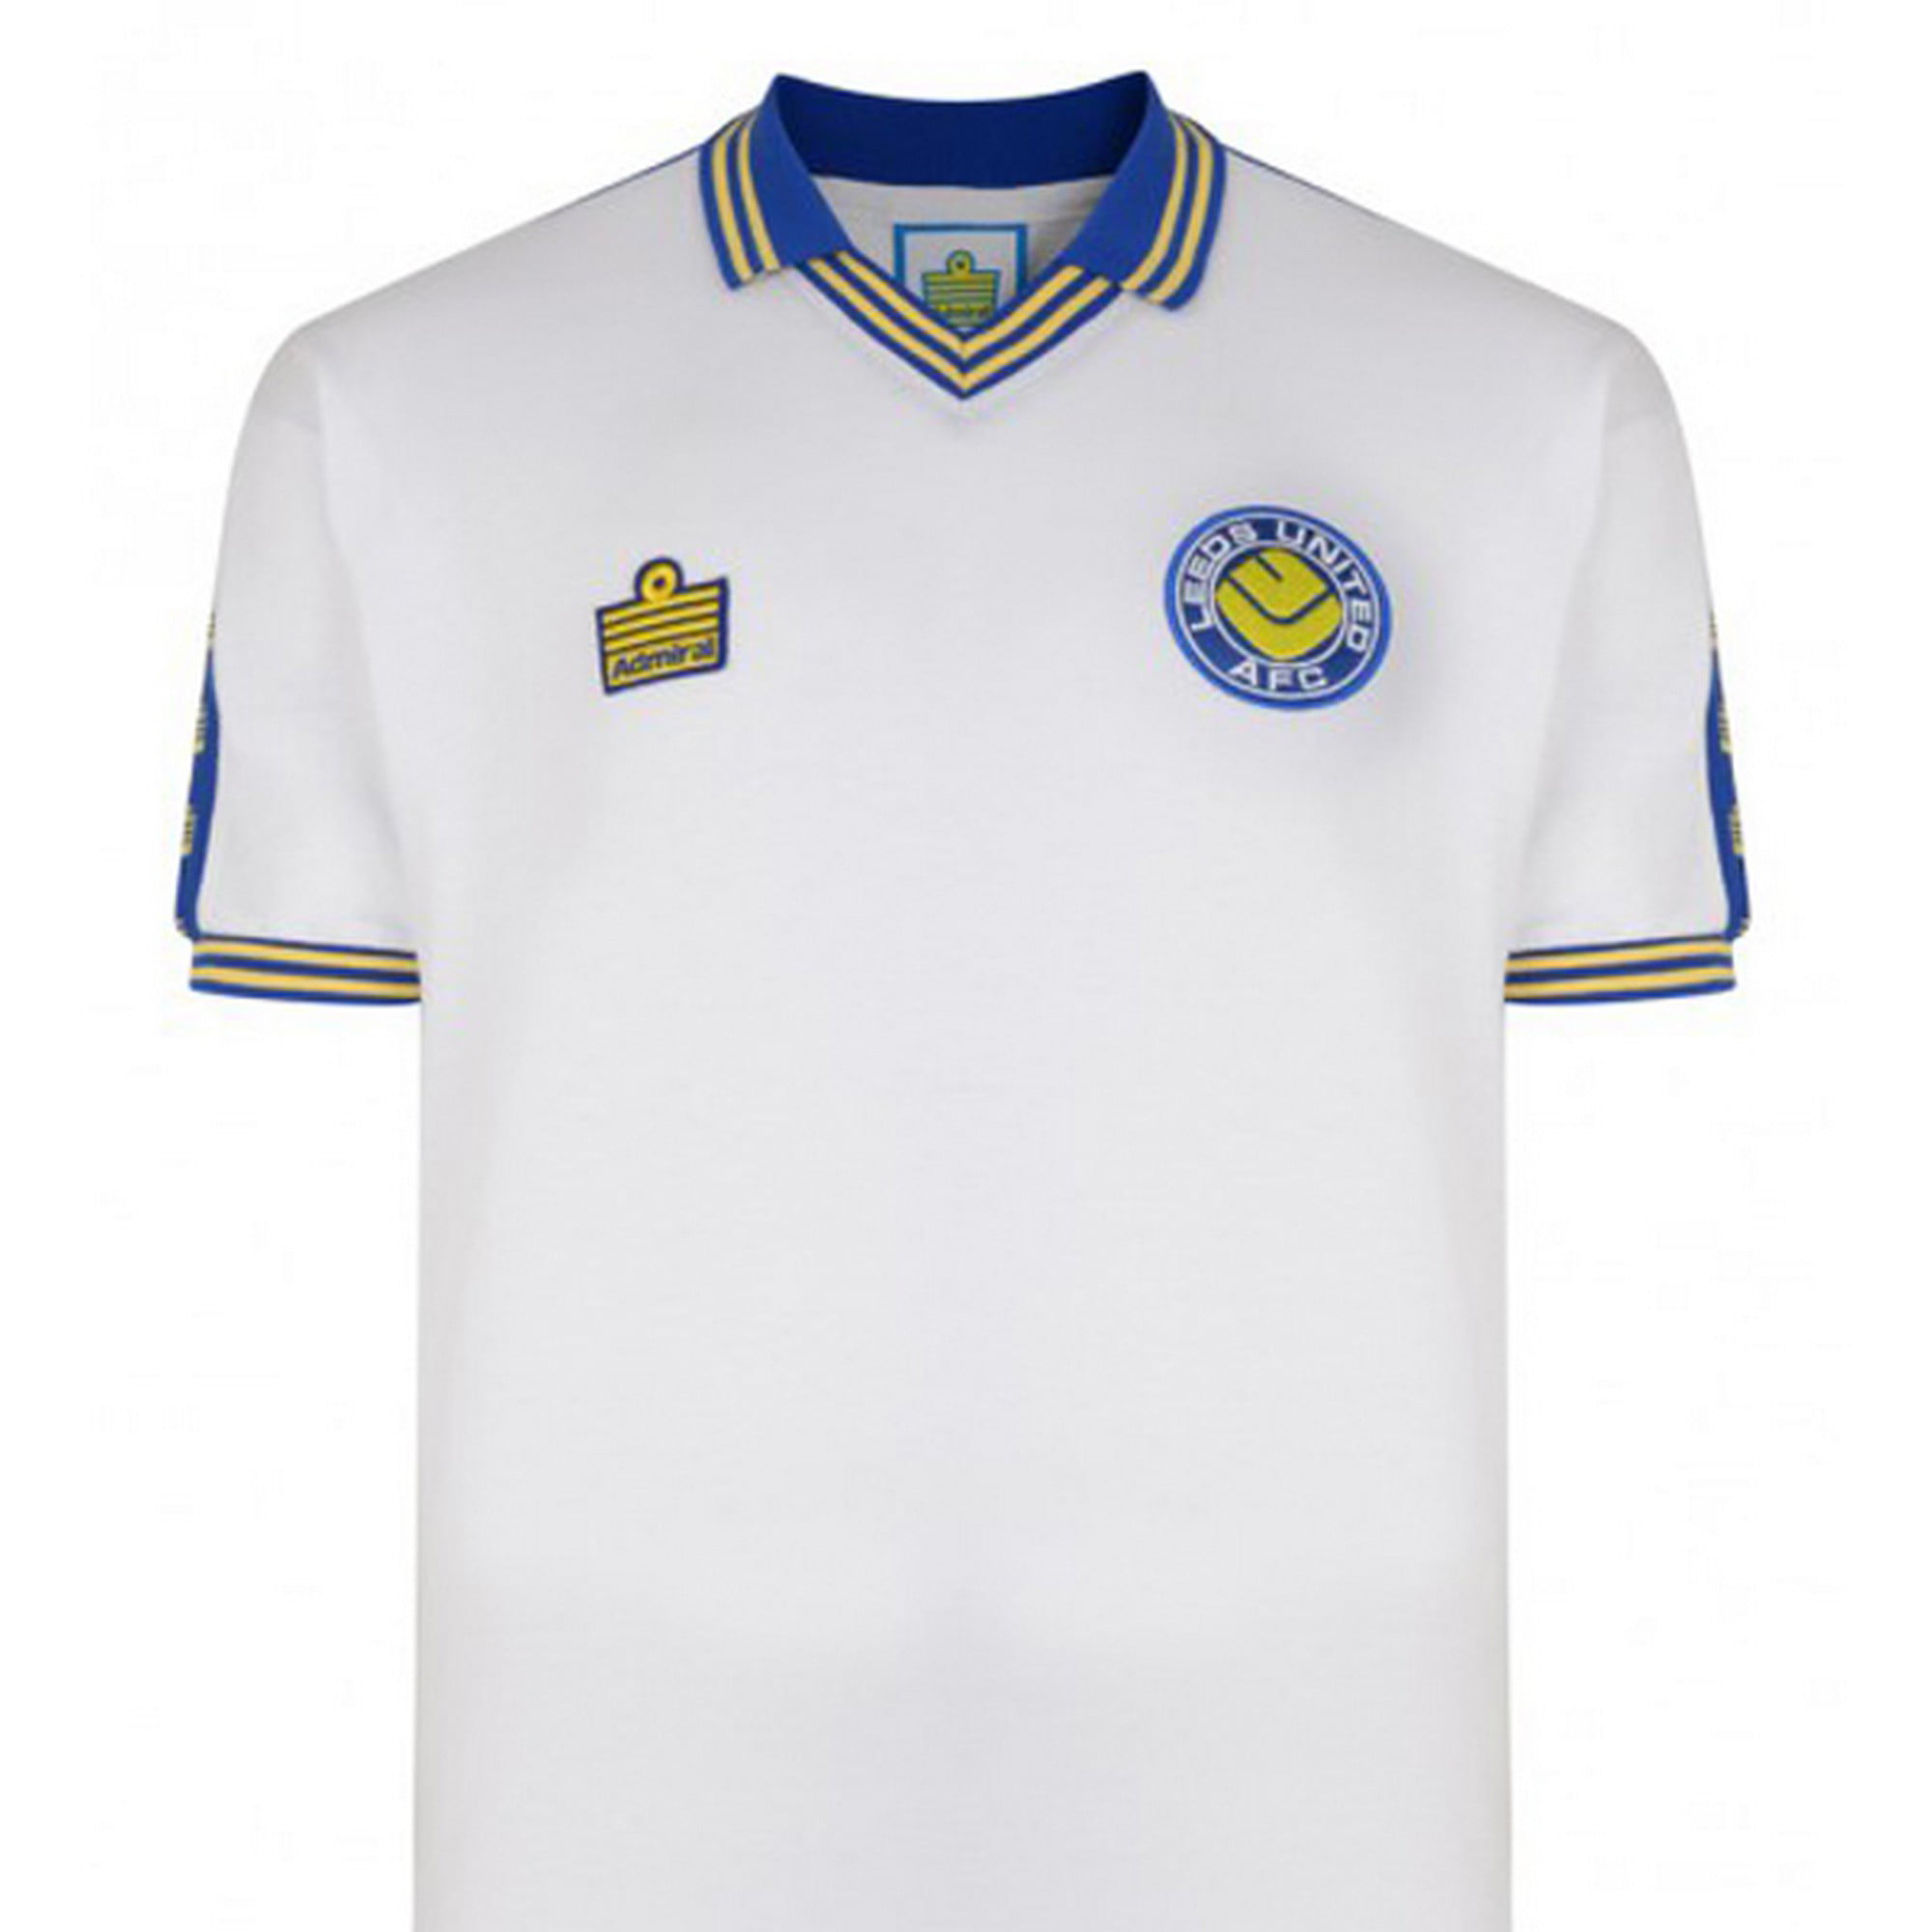 Leeds Baby Blue T Shirt And Shorts-Printed-100% Cotton-Football T Shirt & Shorts 